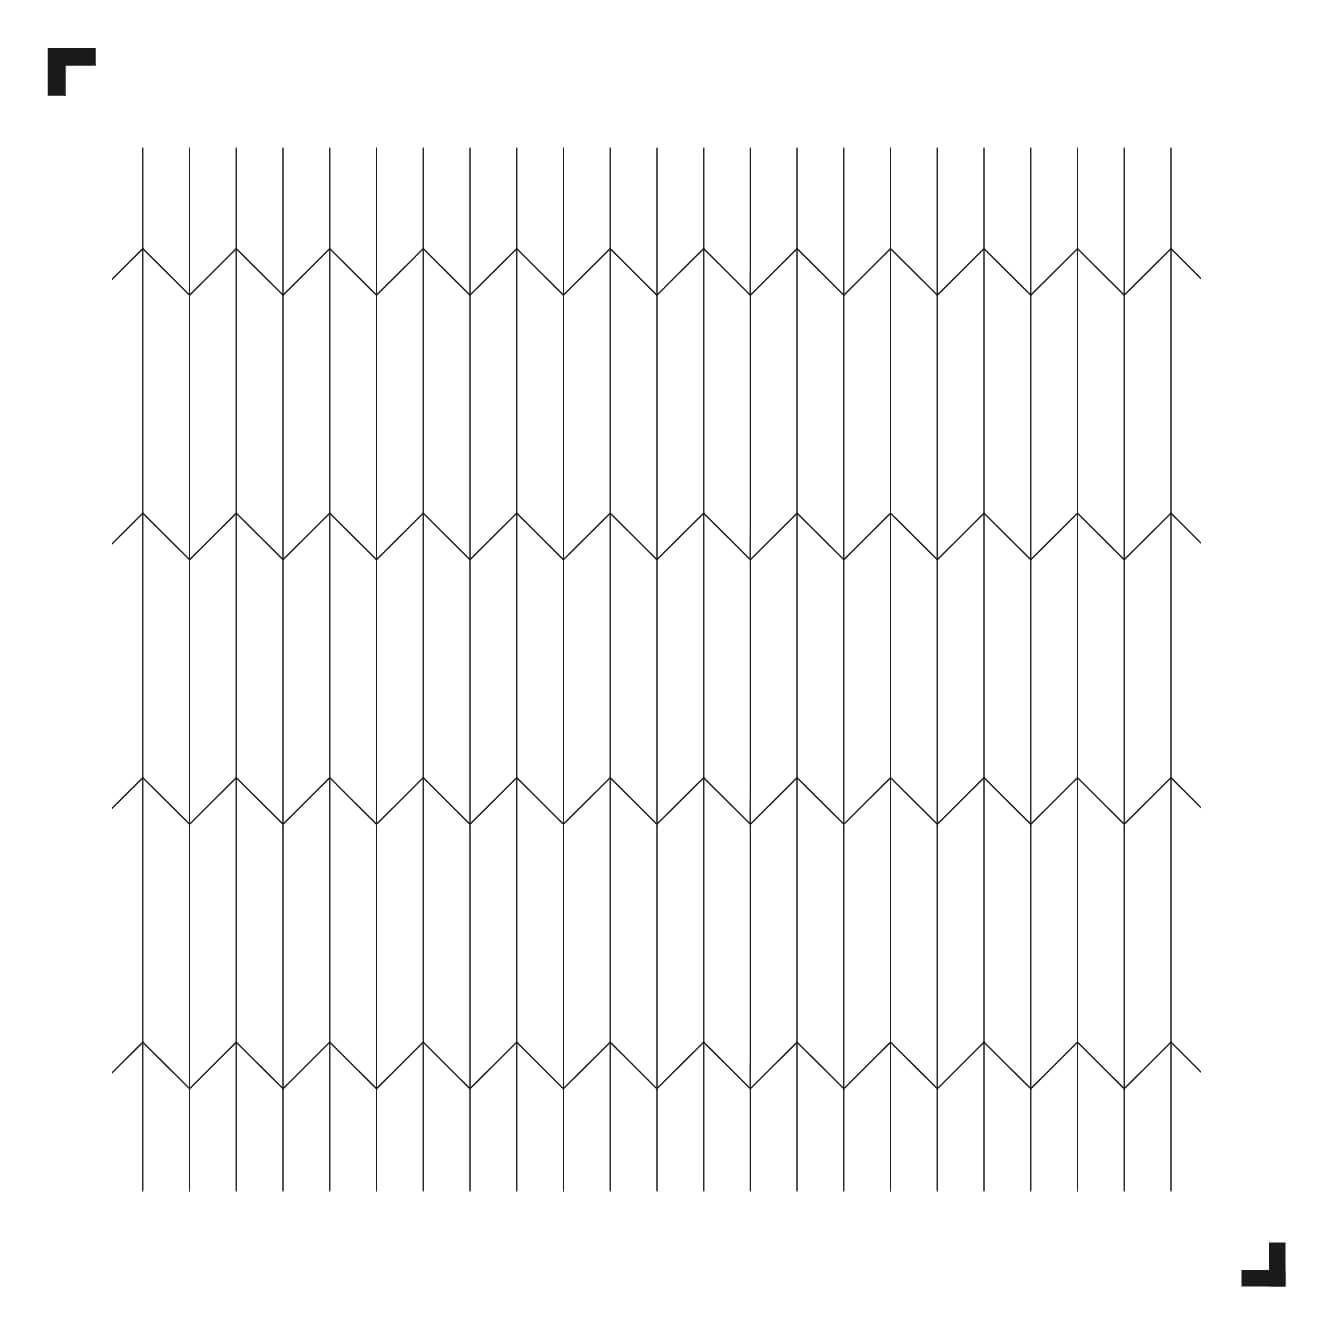 zwart-wit tekening van het Arrow patroon - Moduleo Moods - luxe vinyl tegels - Creatieve vloeren